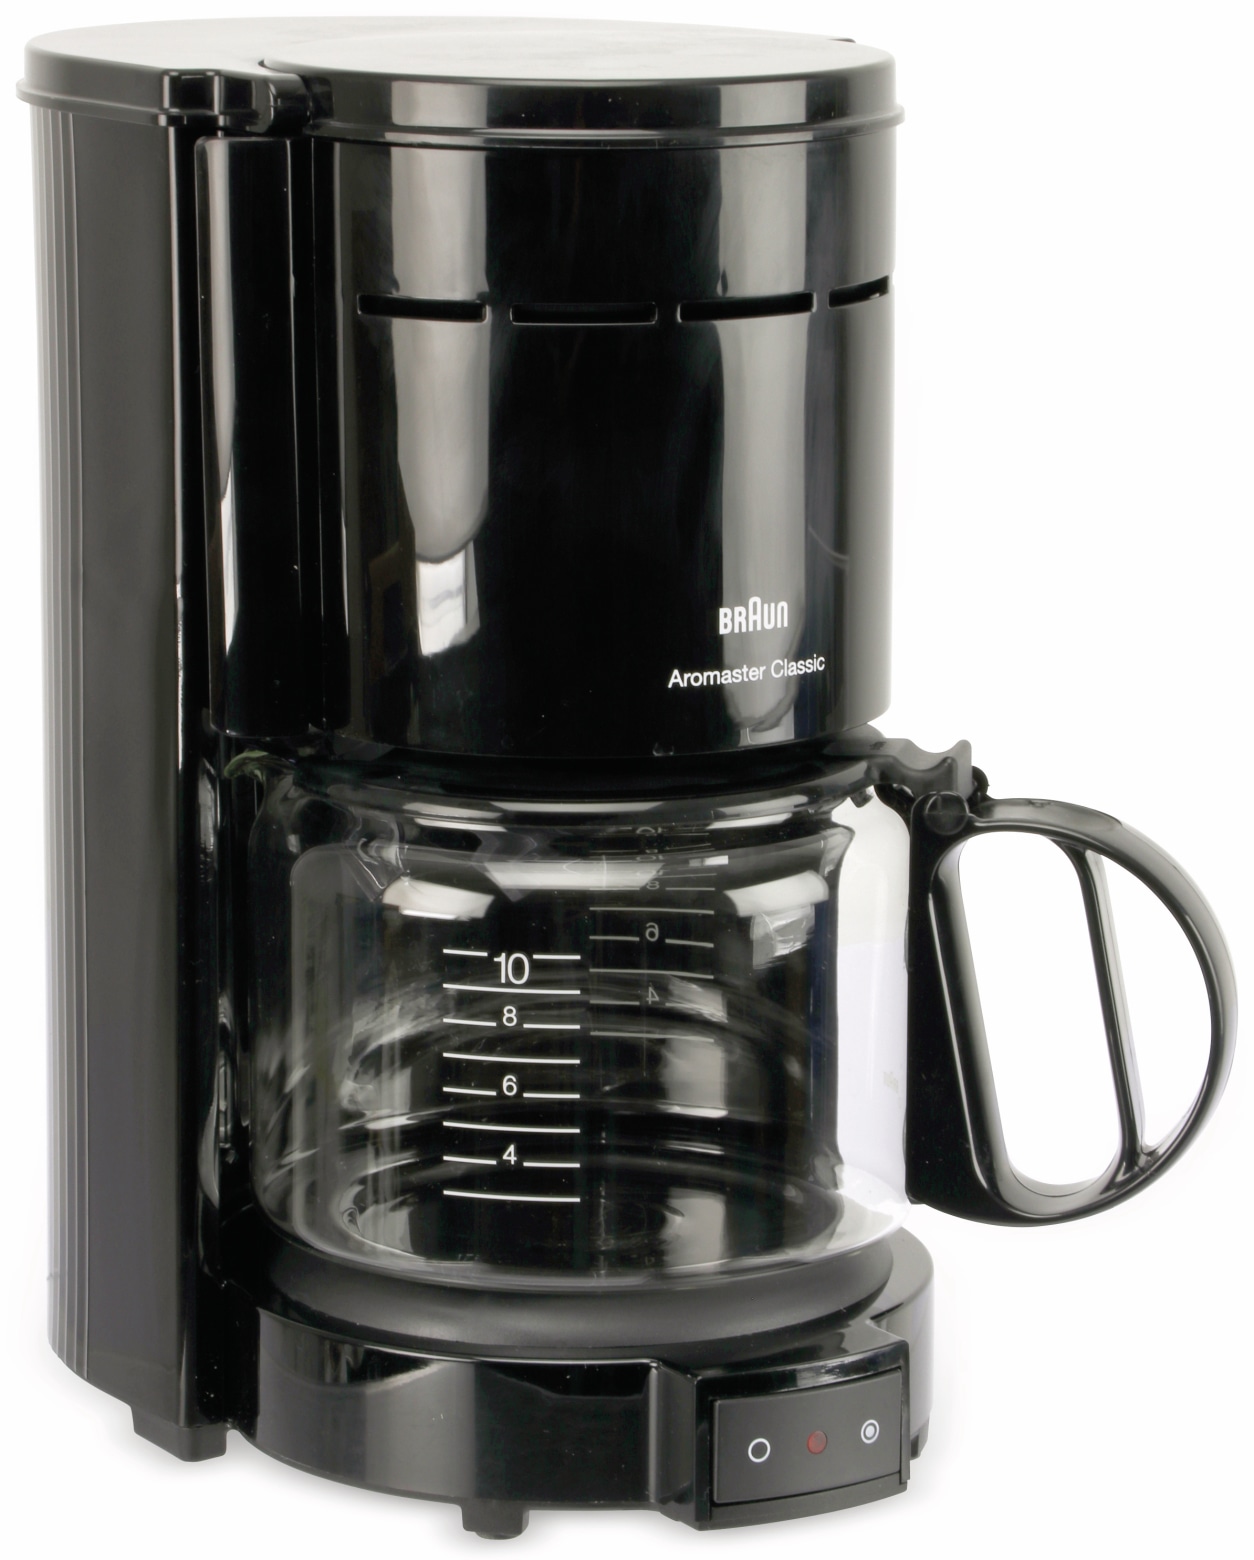 Braun Kaffeautomat, KF47/1, Aromamaster Classic, schwarz, B-Ware